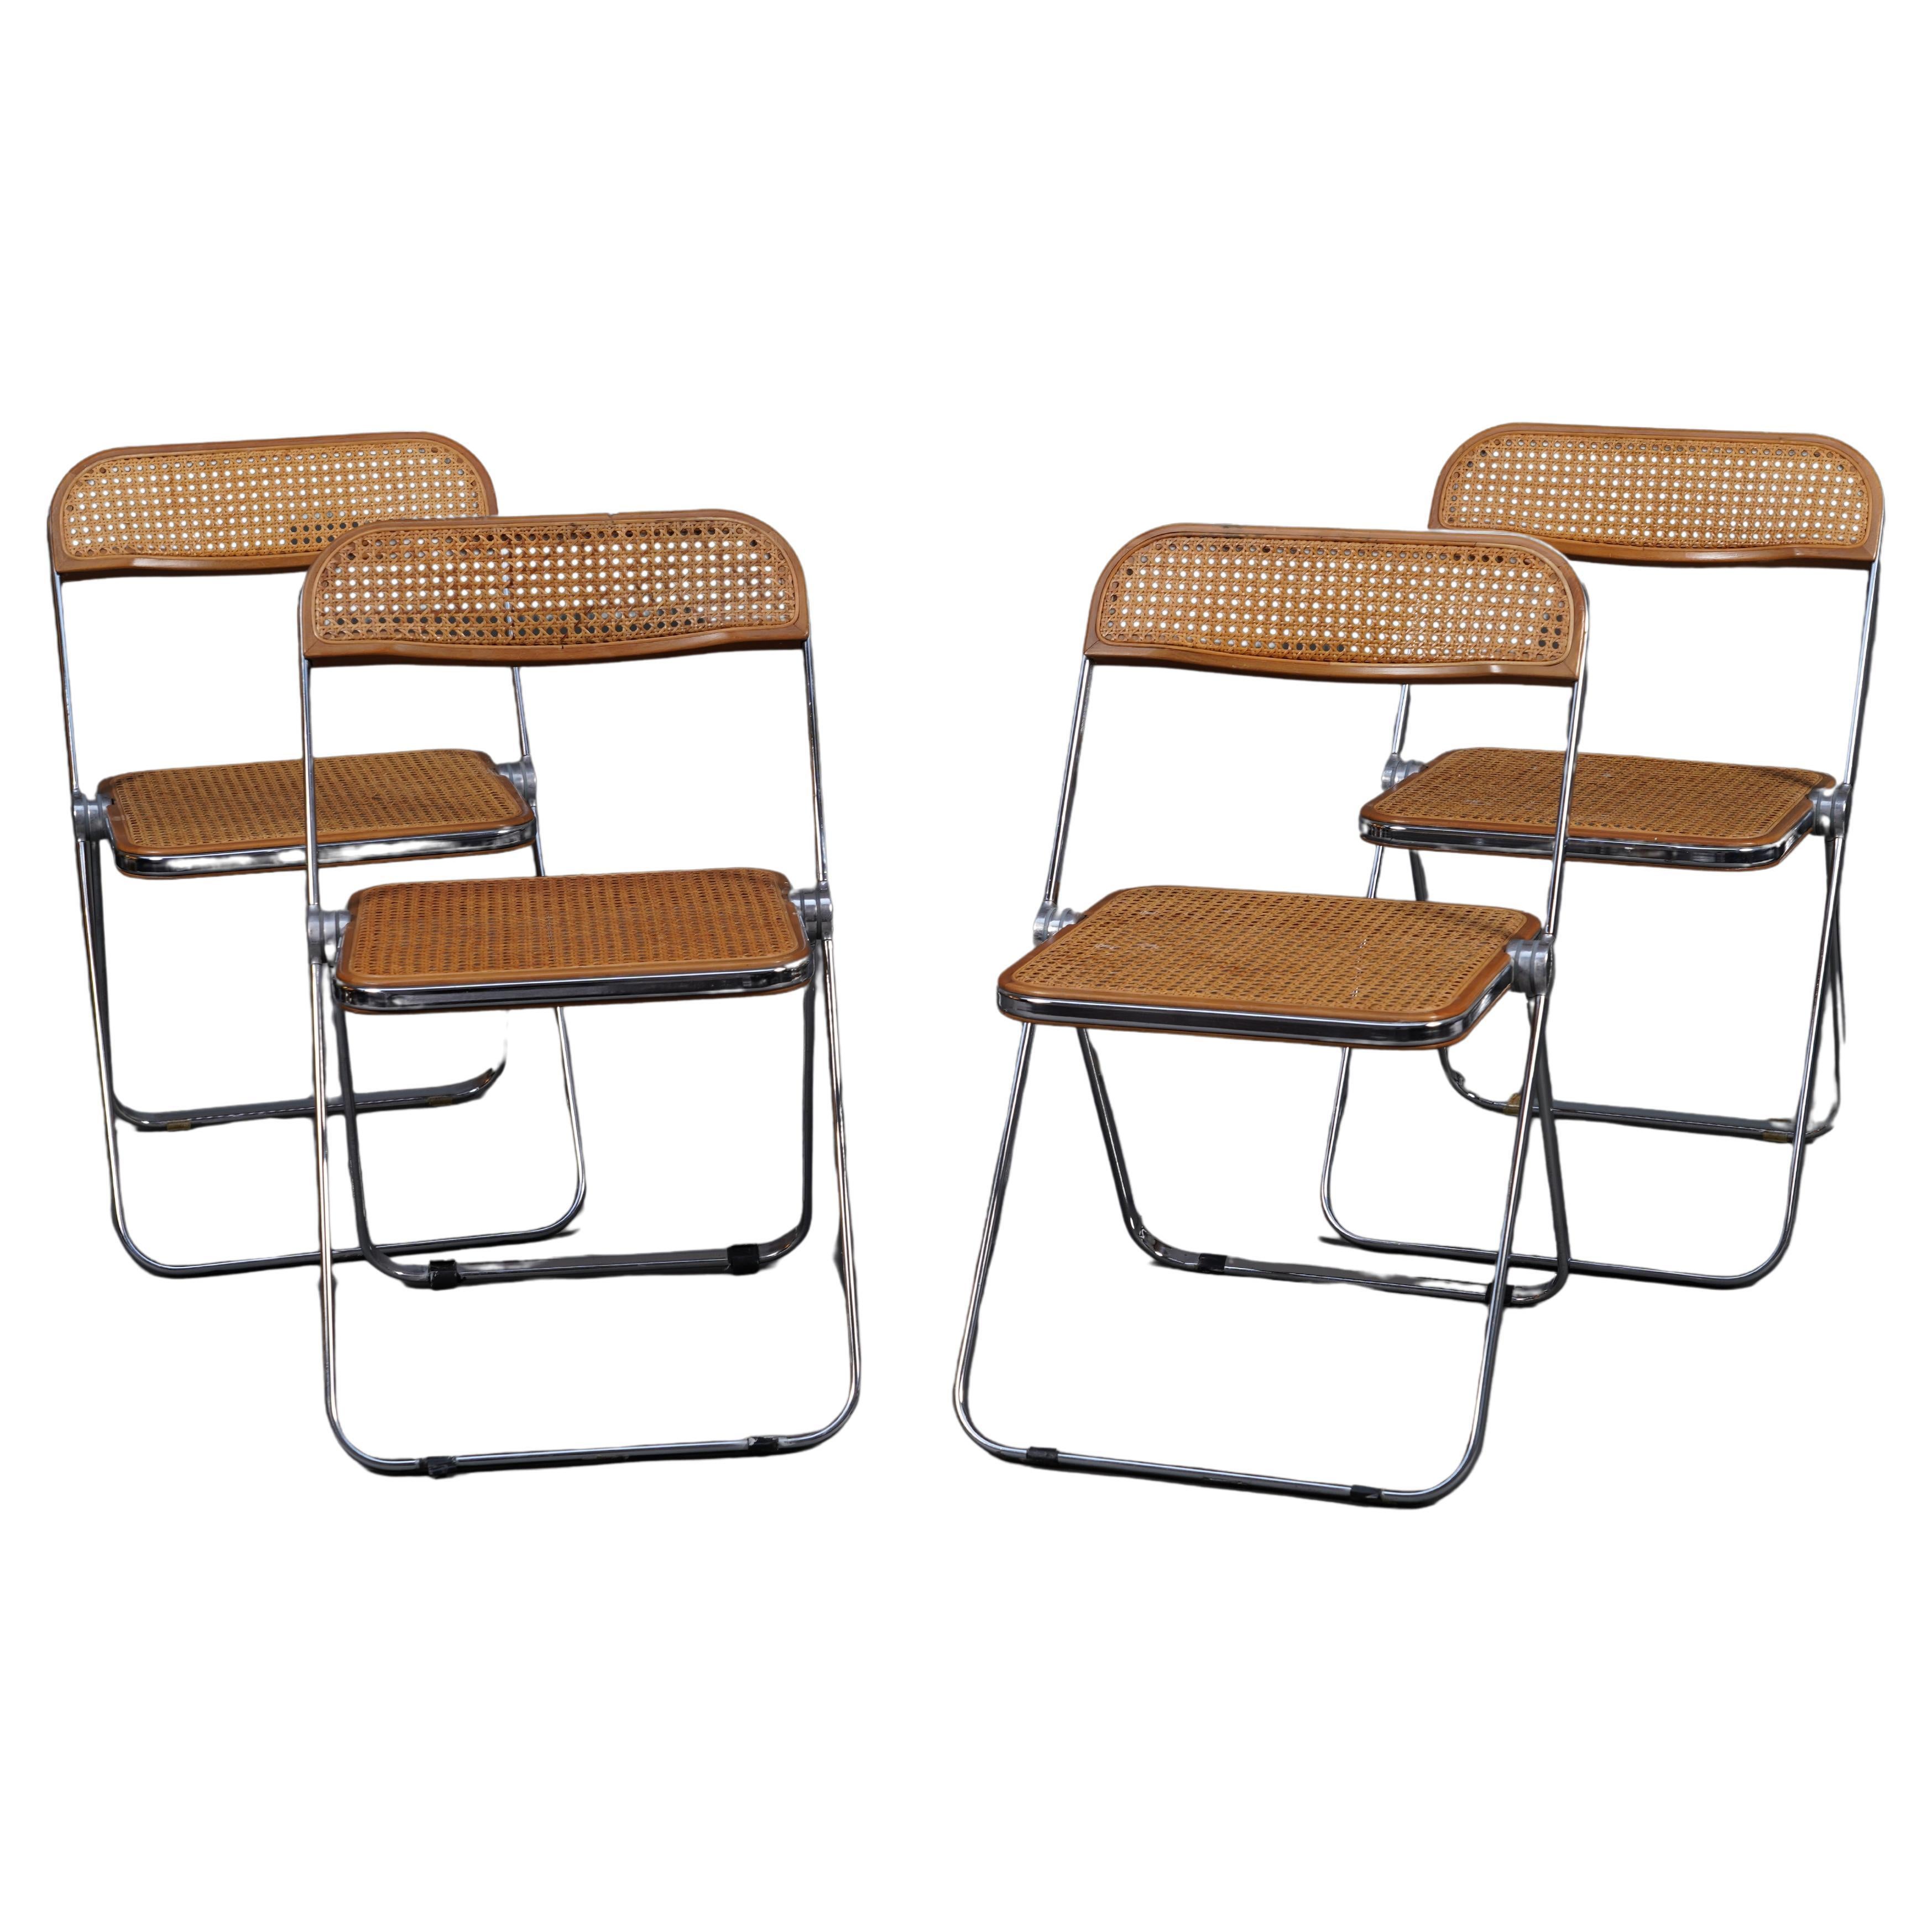 Four "Plia" Chairs, Castelli/Giancarlo Piretti, Italy, Circa 1970